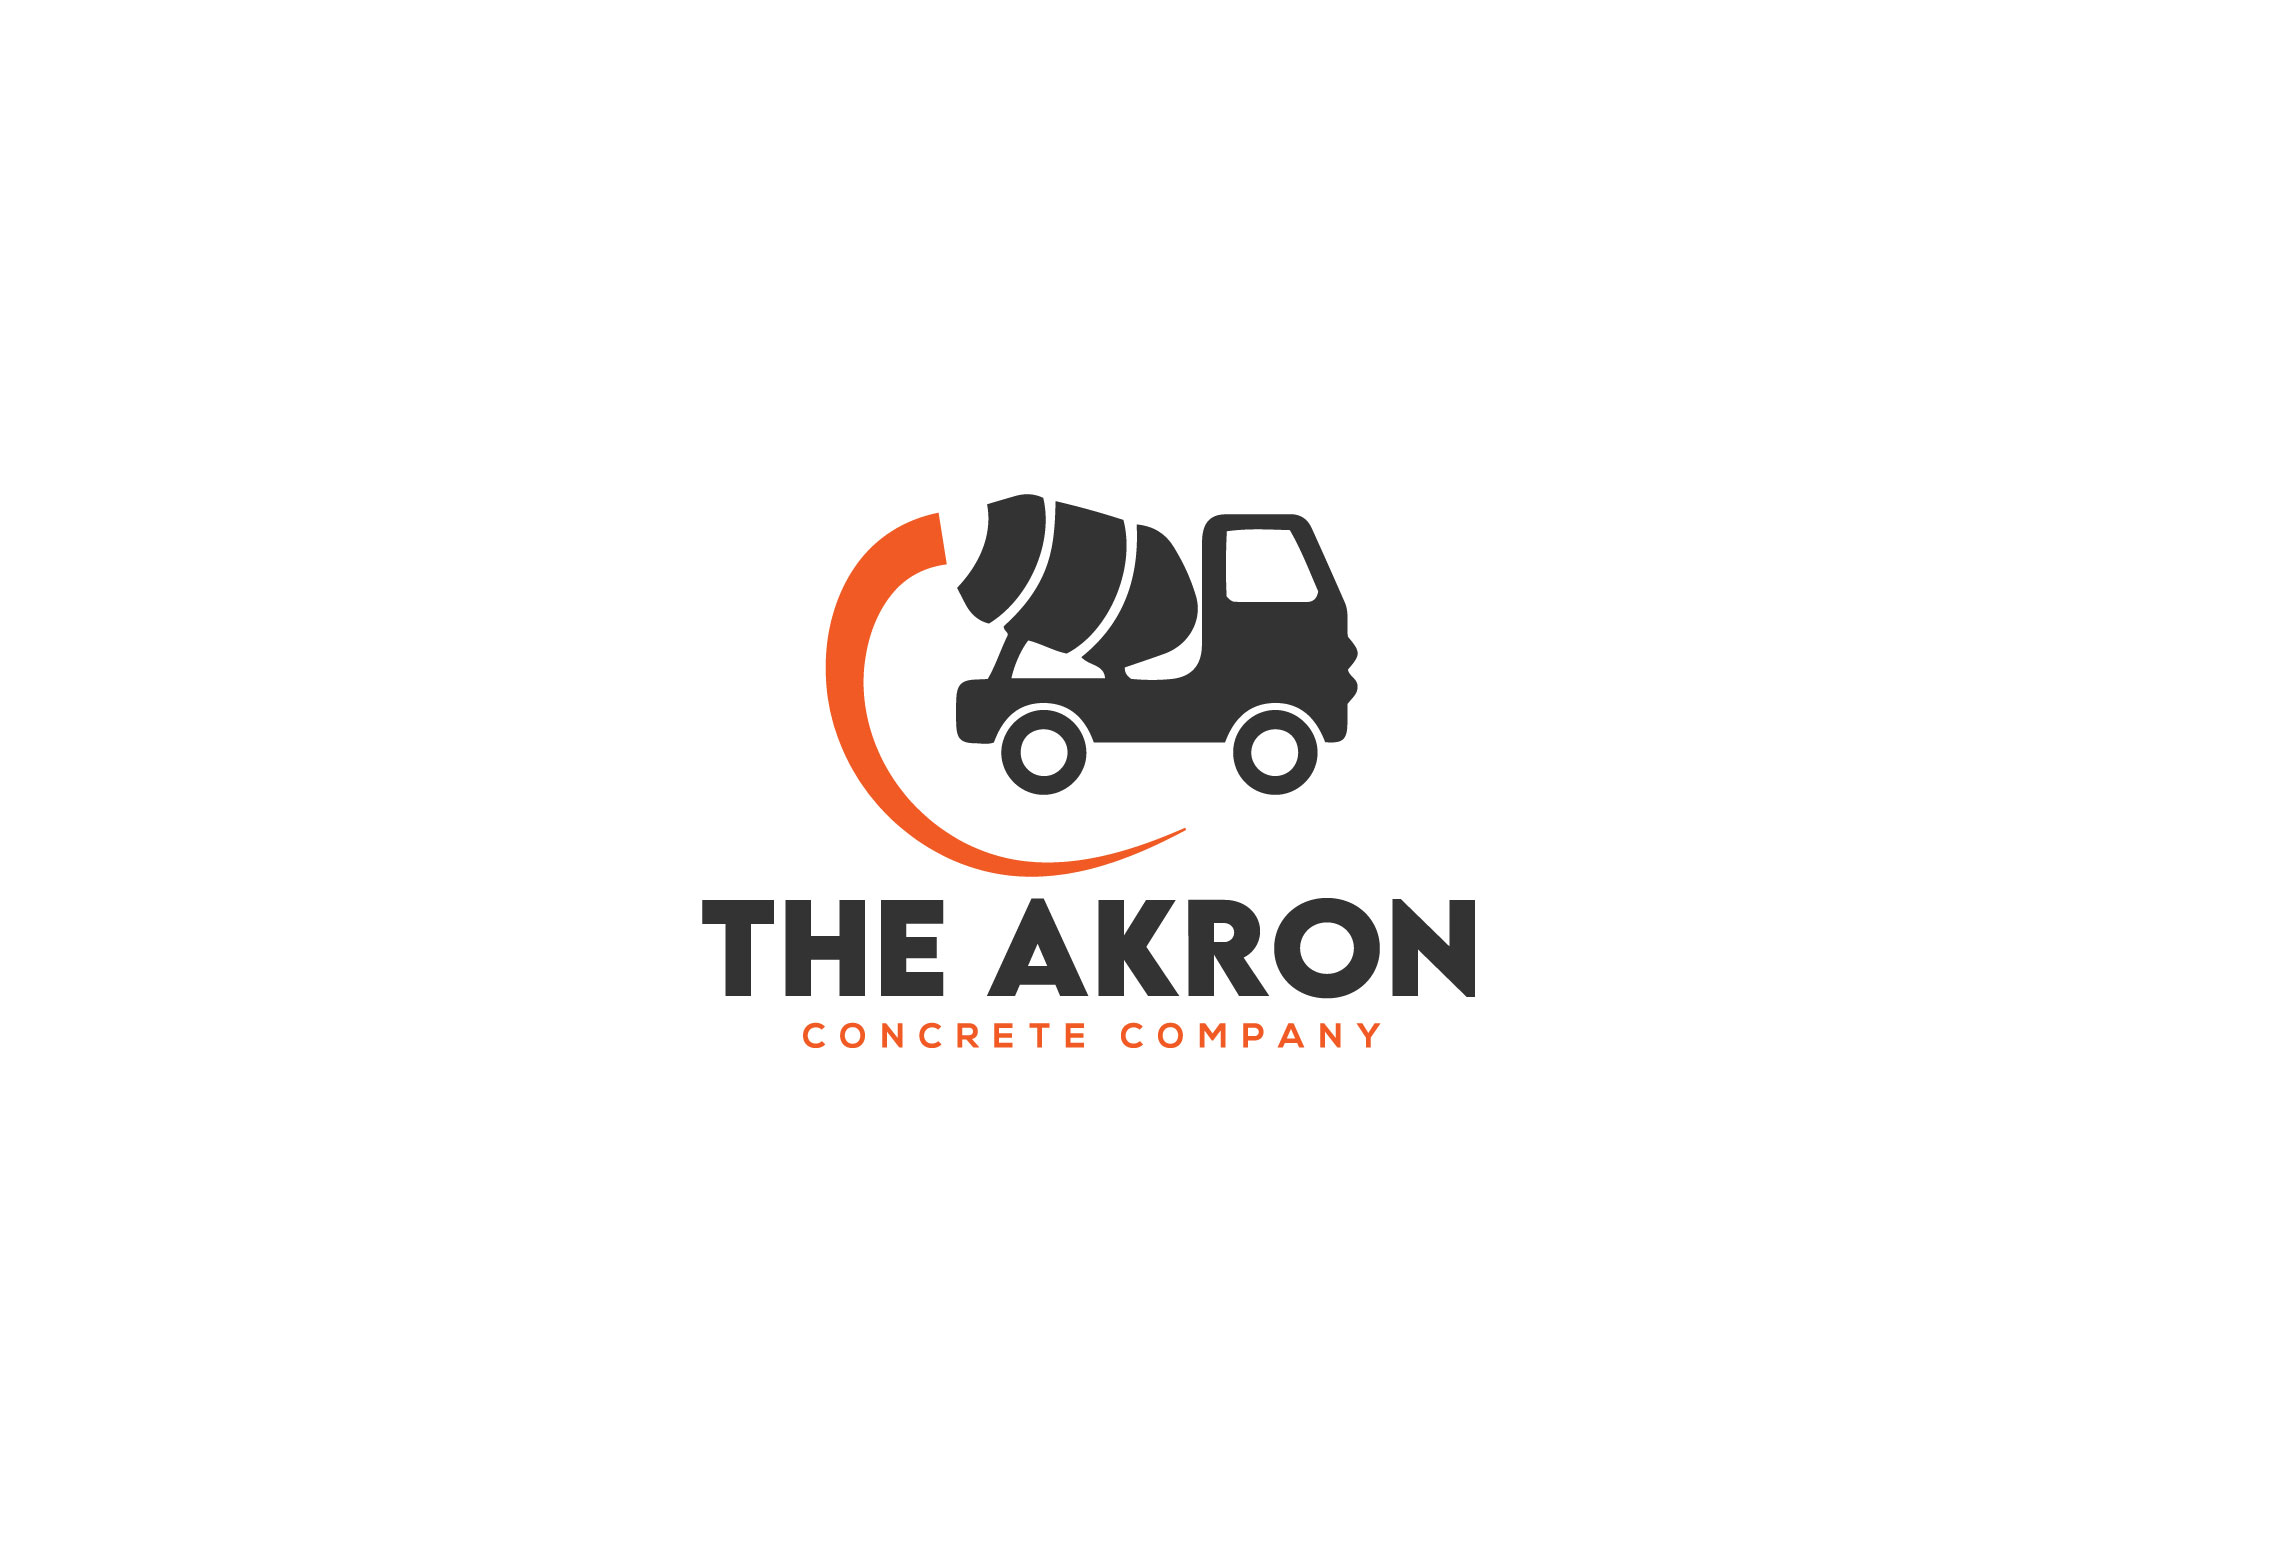 The Akron Concrete Company